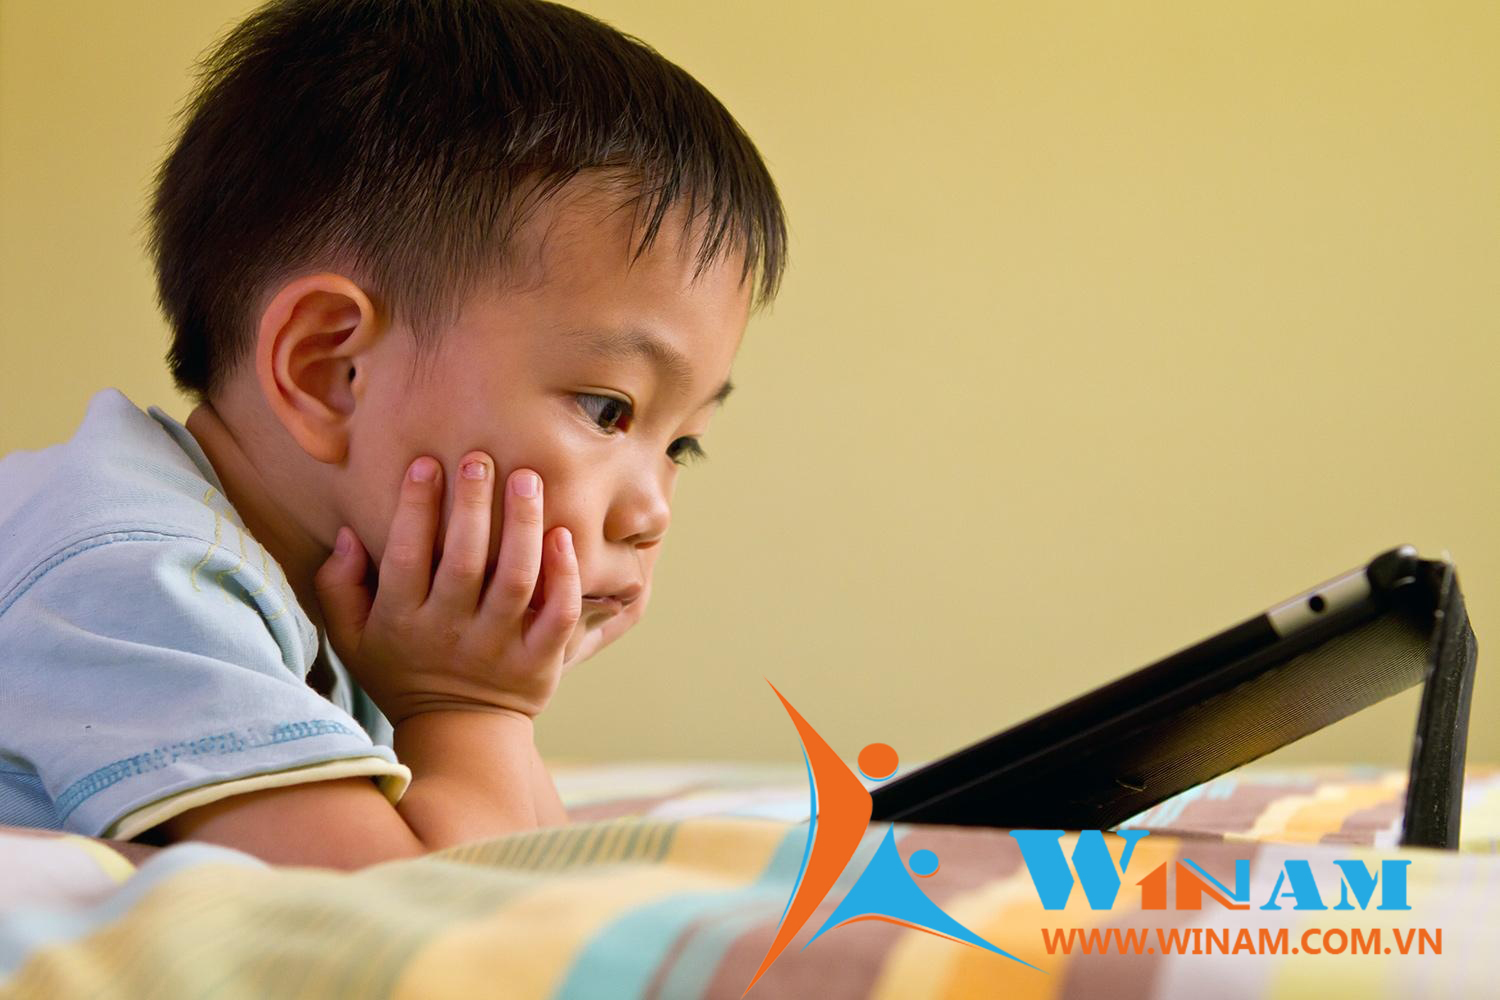 WinPlay – khoảng trời tuổi thơ dành riêng cho bé